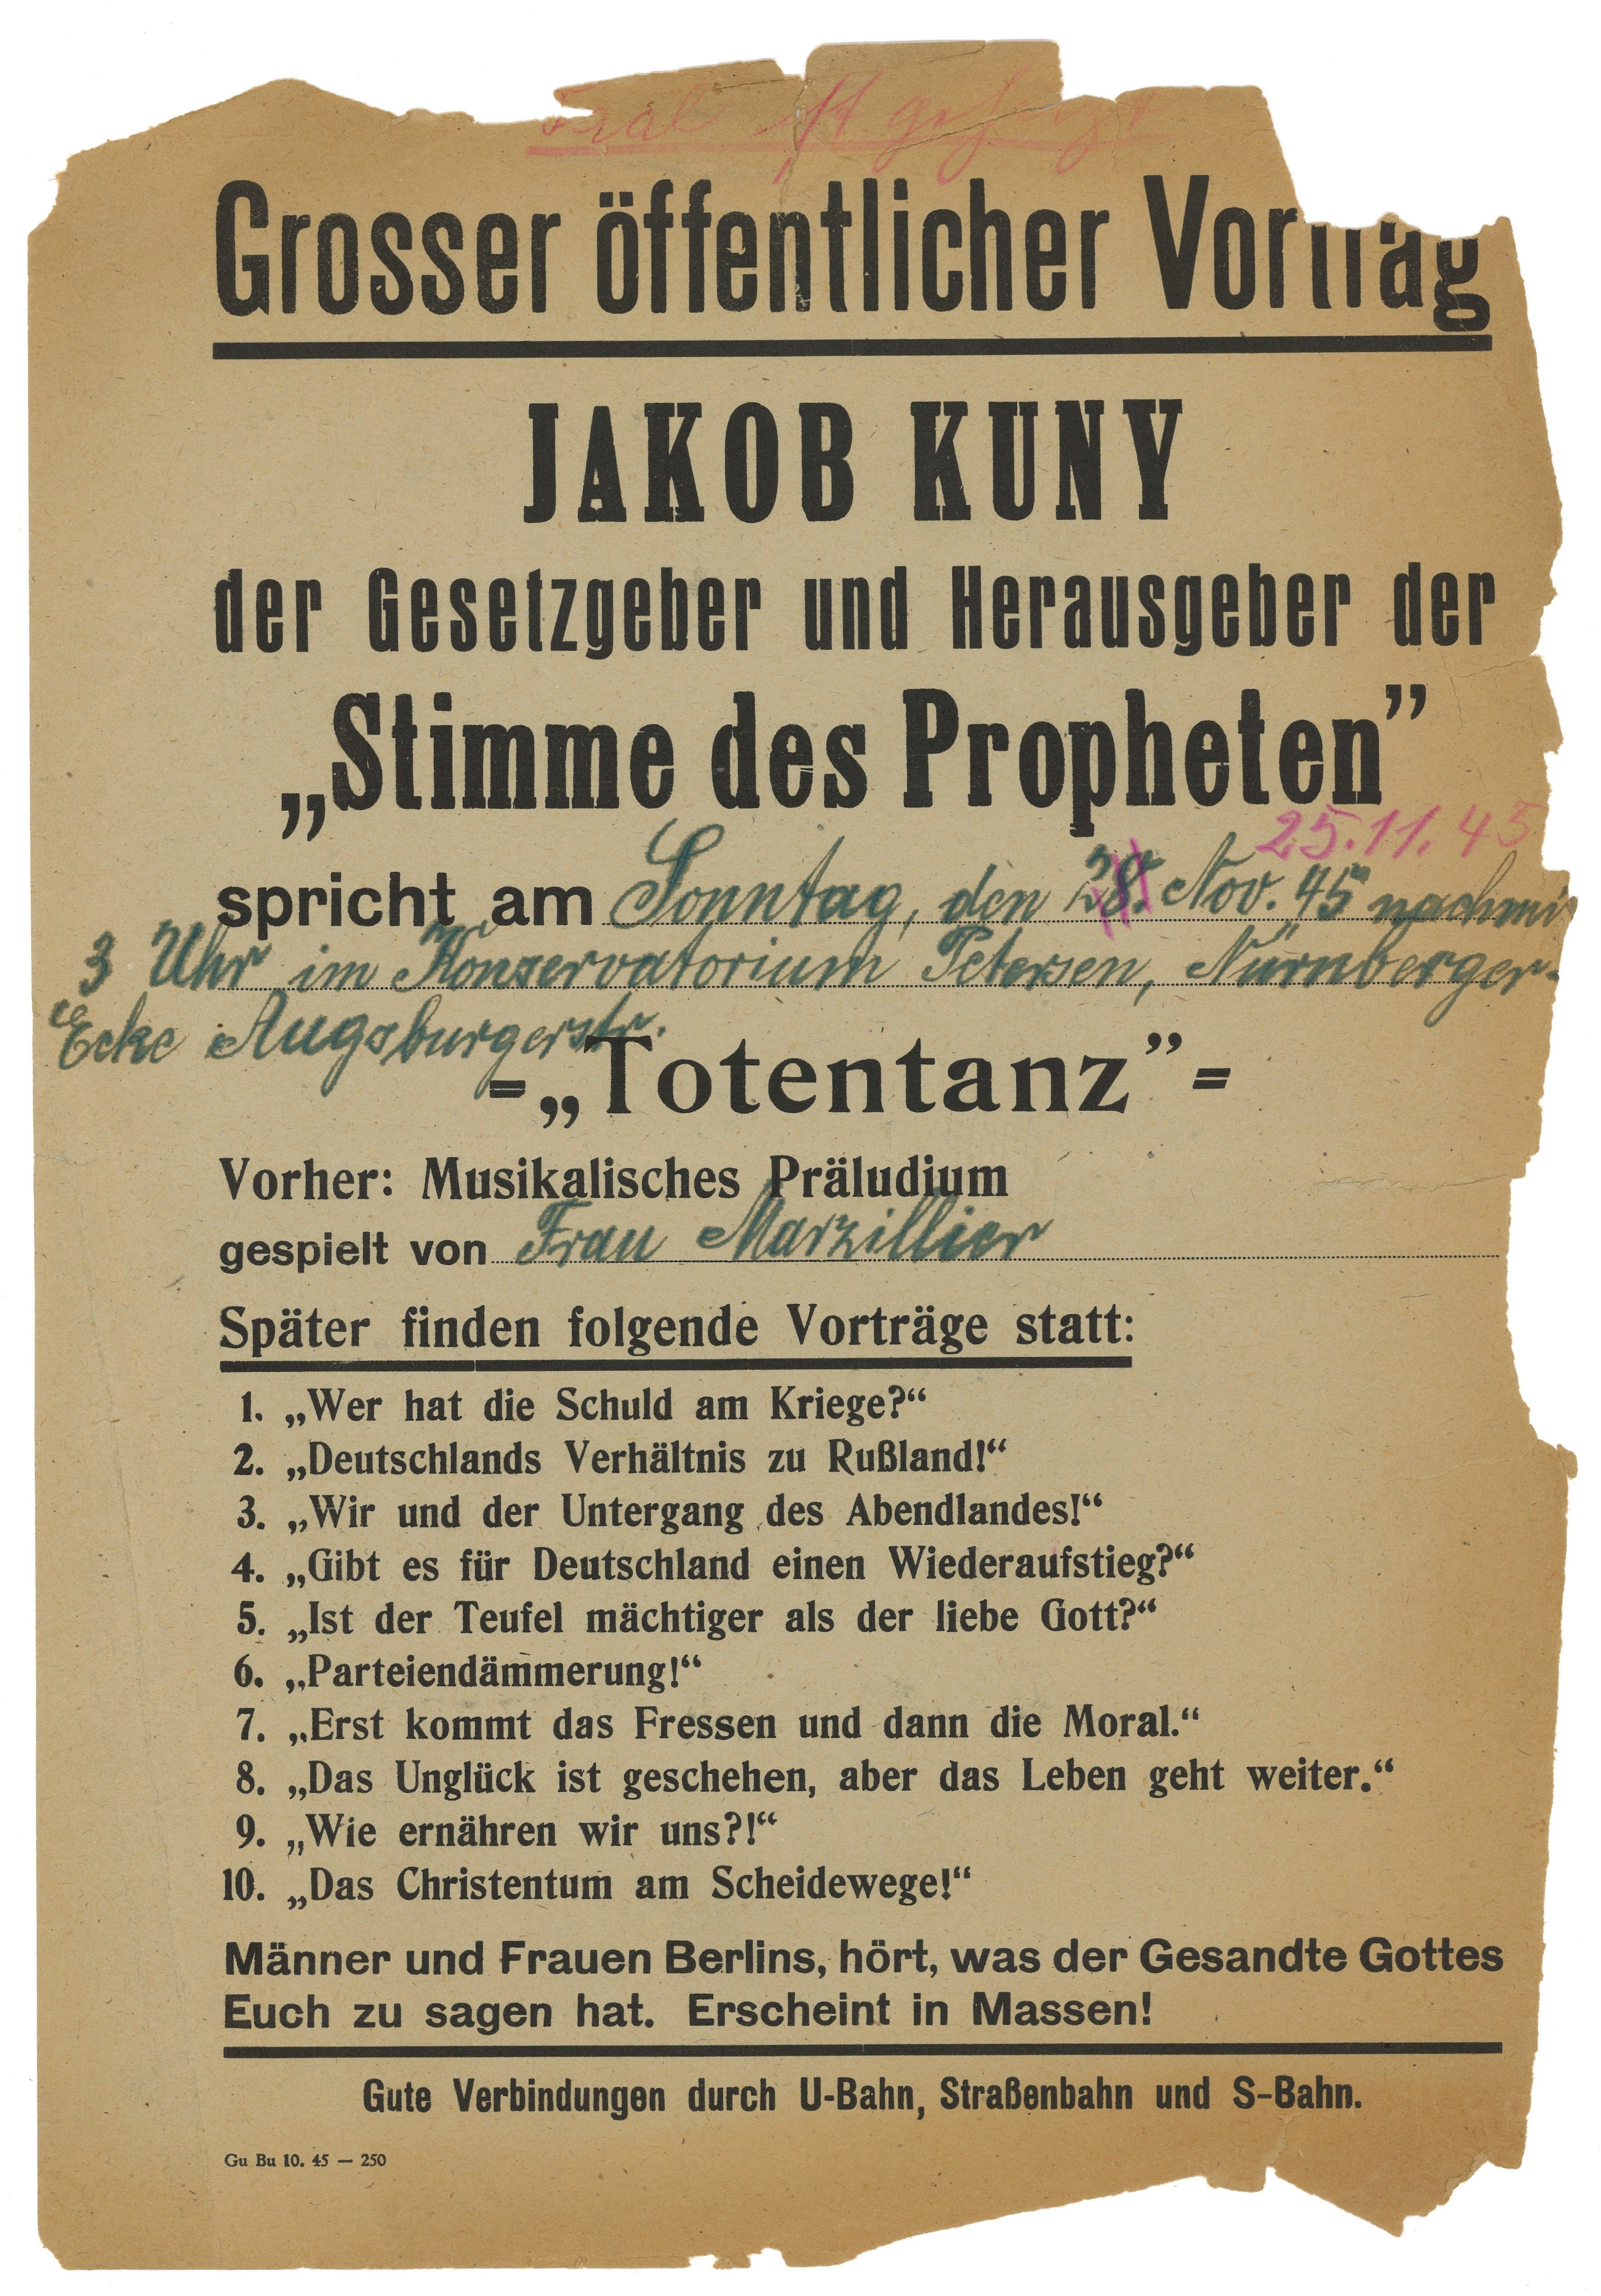 Flugblatt zum Vortrag "Totentanz" von Jakob Kuny in Berlin am 25. November 1945 (Landesgeschichtliche Vereinigung für die Mark Brandenburg e.V., Archiv CC BY)